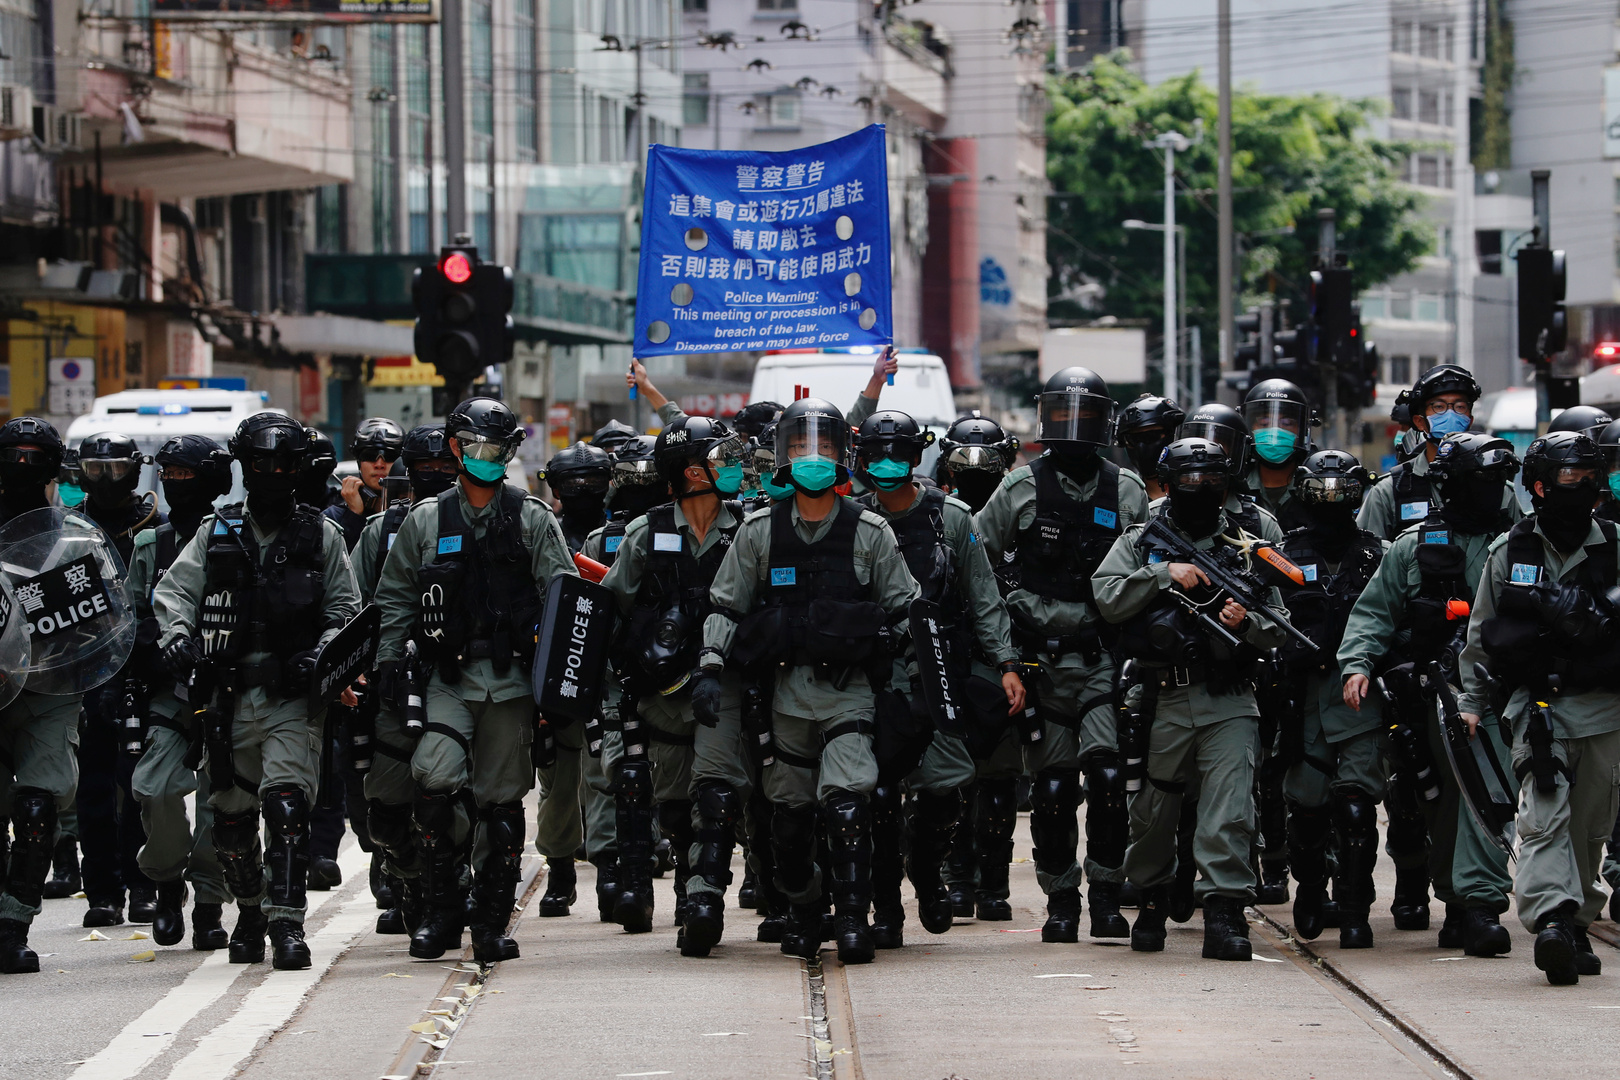 شرطة هونغ كونغ تعتقل عشرات الأشخاص بعد دخول قانون الأمن الصيني حيز التنفيذ